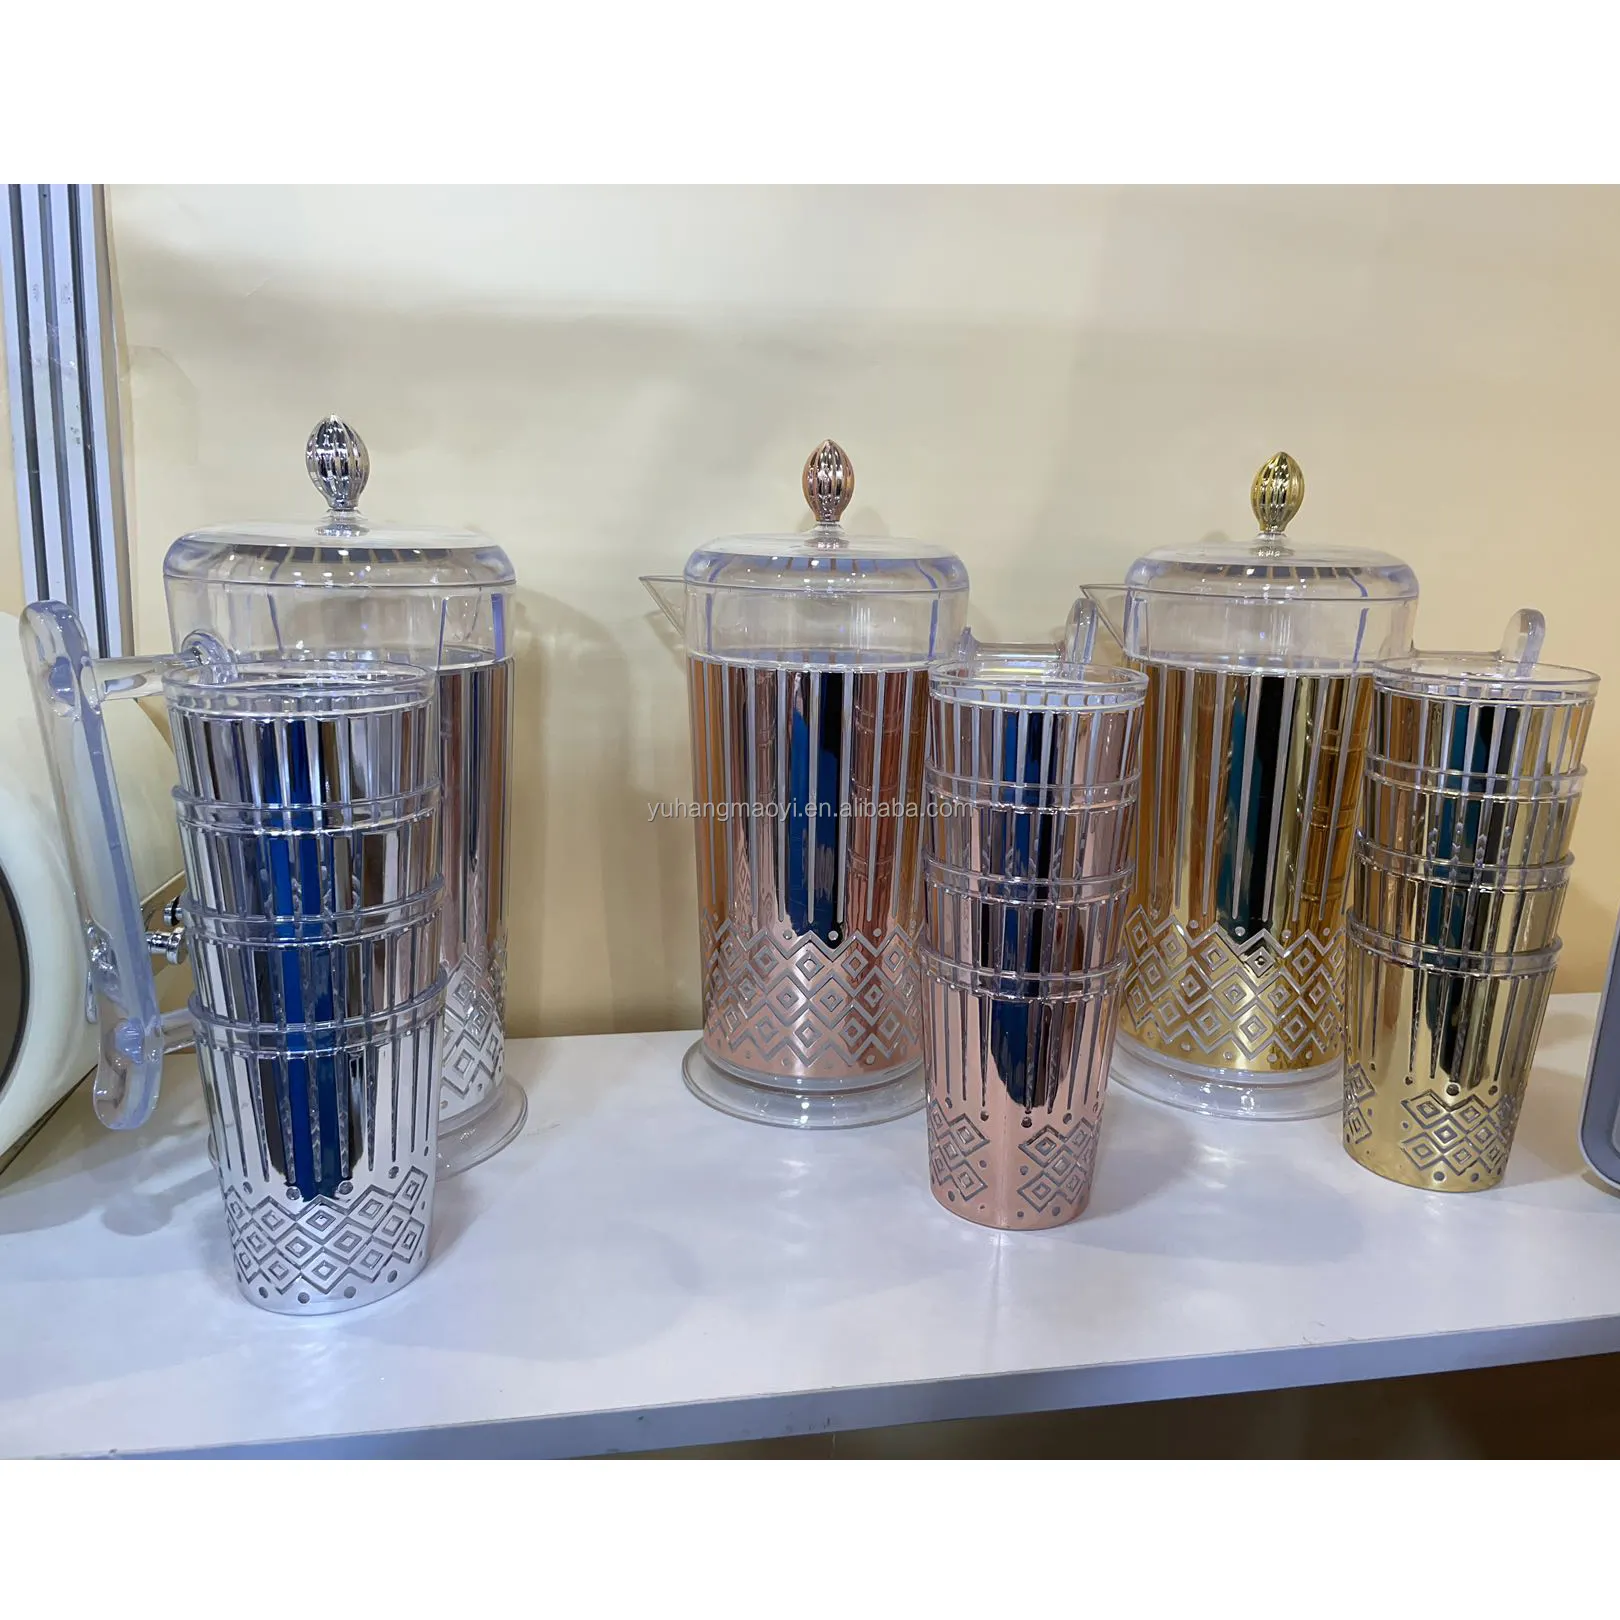 Venta caliente de fábrica Jarras de oro Juego de jarras de agua plateadas de plástico con 4 tazas Juego de jarras de plástico para beber agua fría